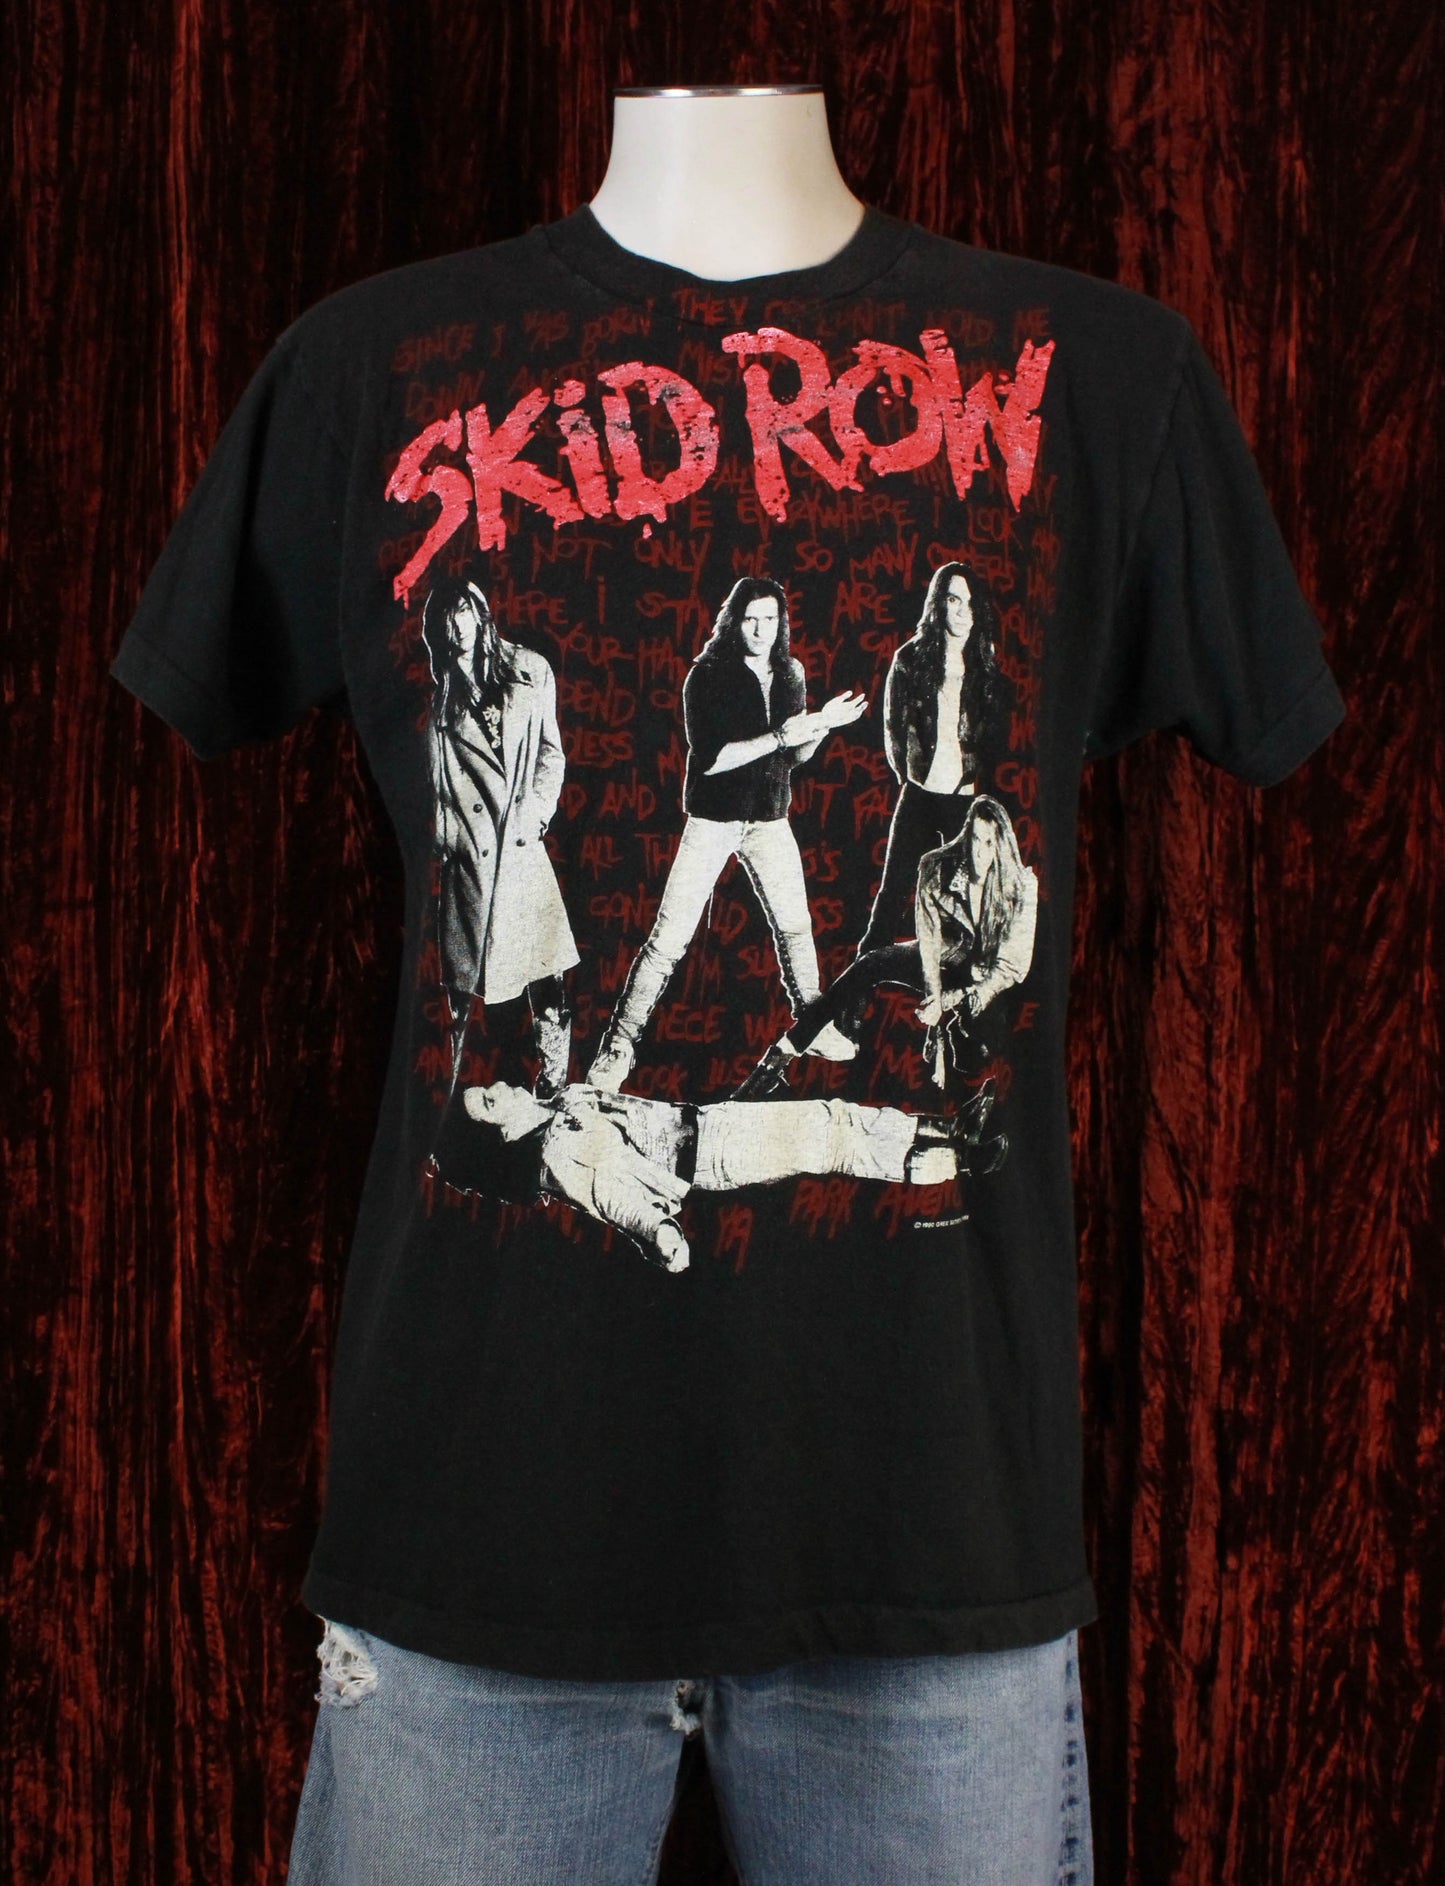 Vintage Skid Row Concert T Shirt 1990 I Survived Skid Row Live - Large